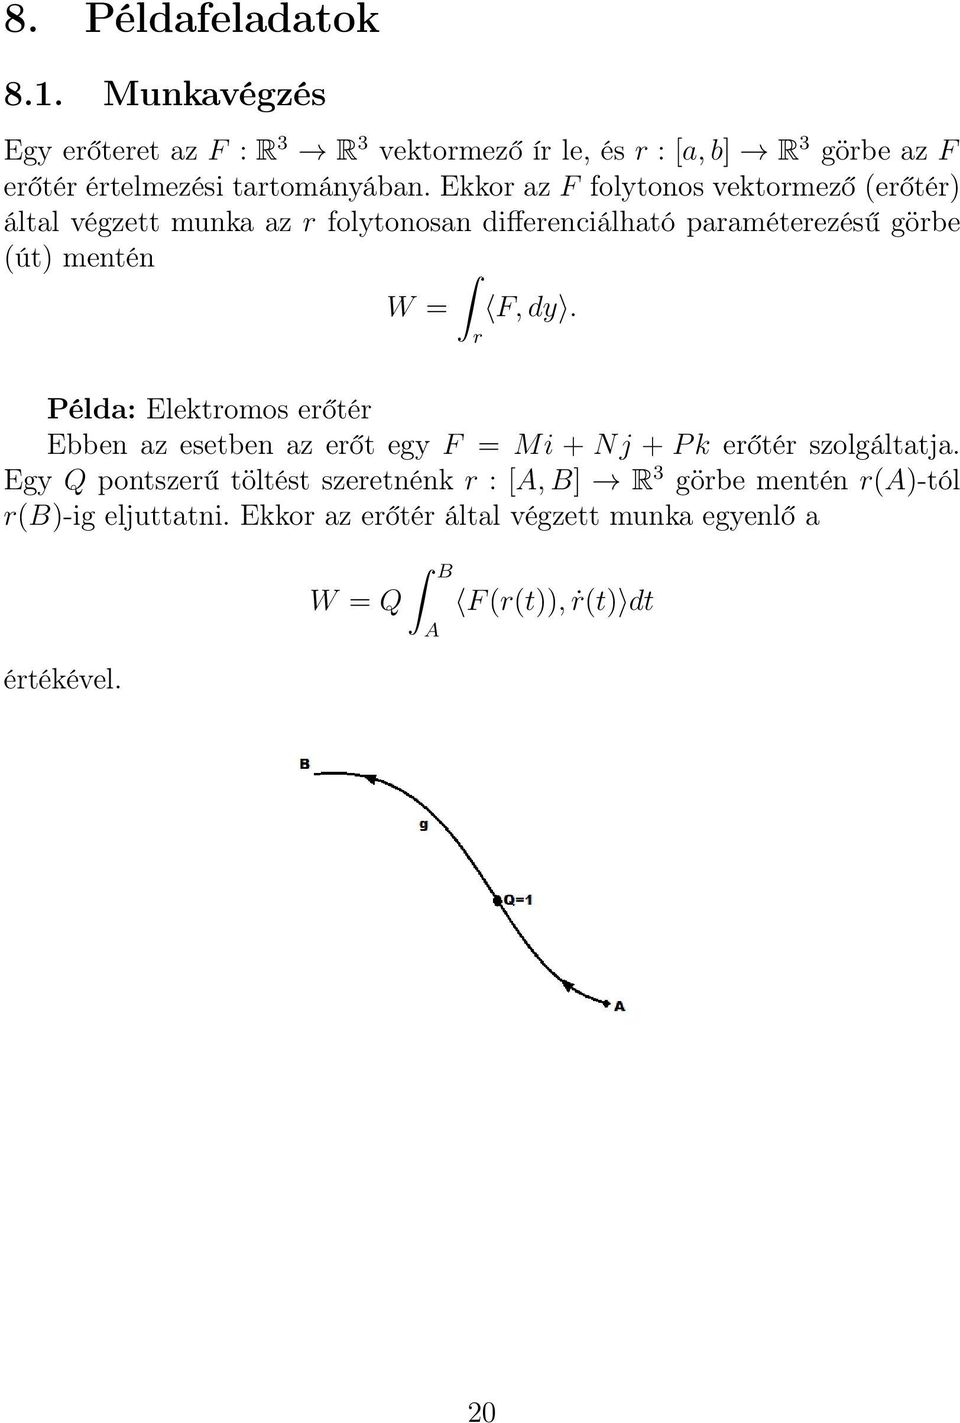 Ekkor az F folytonos vektormező (erőtér) által végzett munka az r folytonosan differenciálható paraméterezésű görbe (út) mentén W = F, dy.